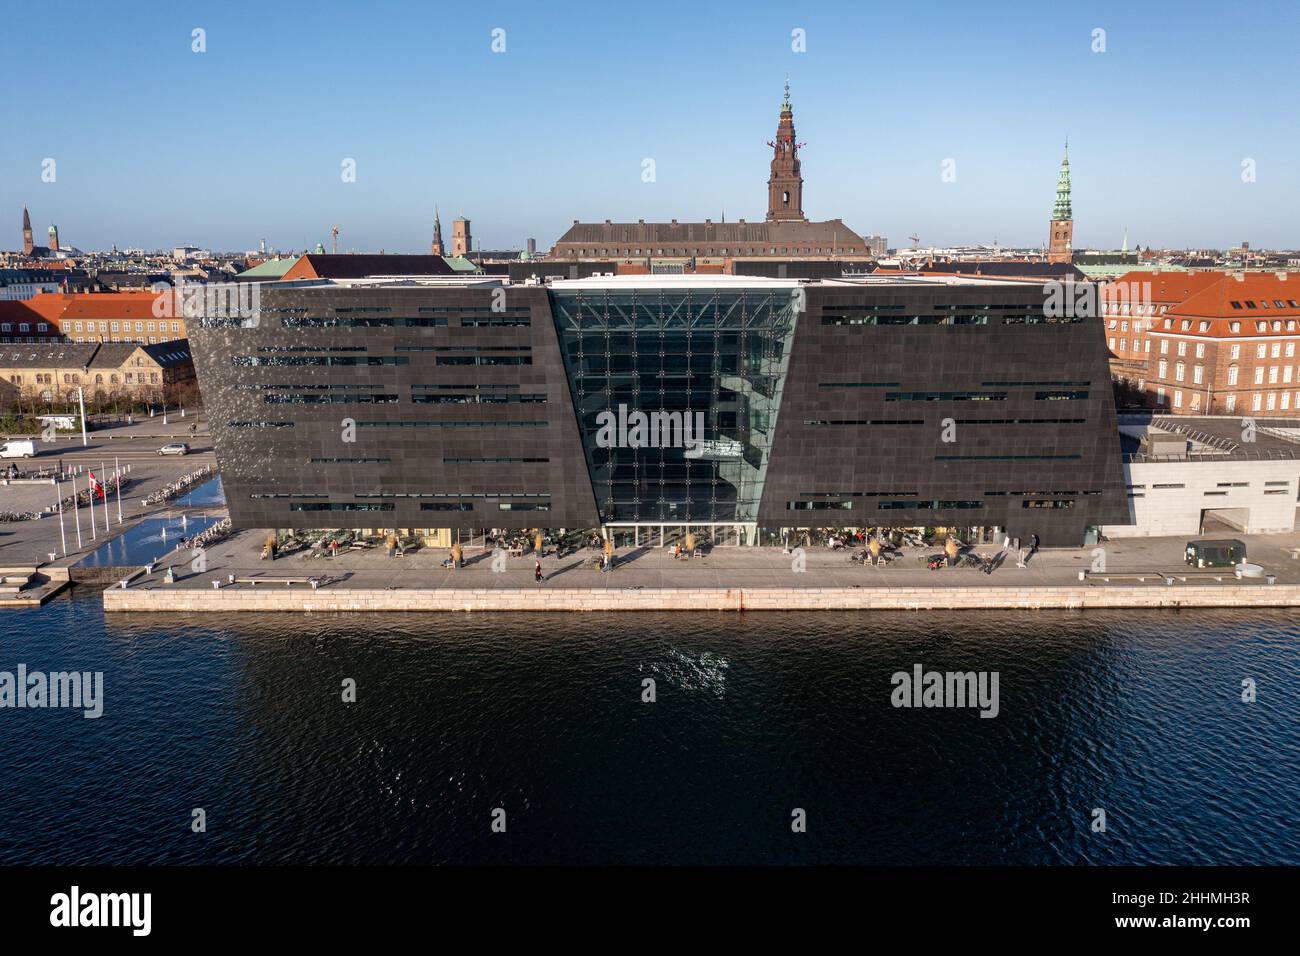 Vue aérienne de la Bibliothèque royale de Copenhague, Danemark Banque D'Images